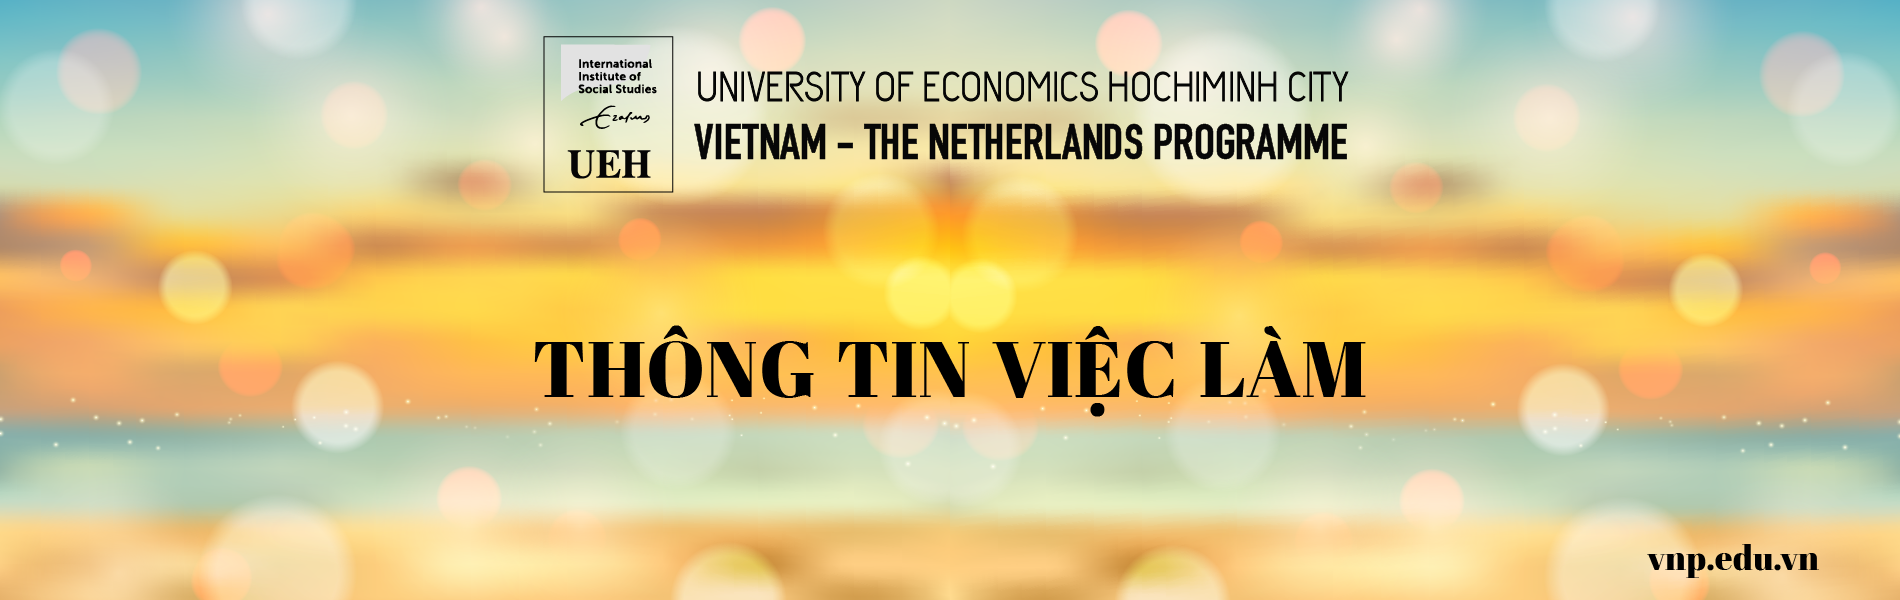 Đại học Kinh tế TPHCM tuyển dụng đợt 2 năm 2018